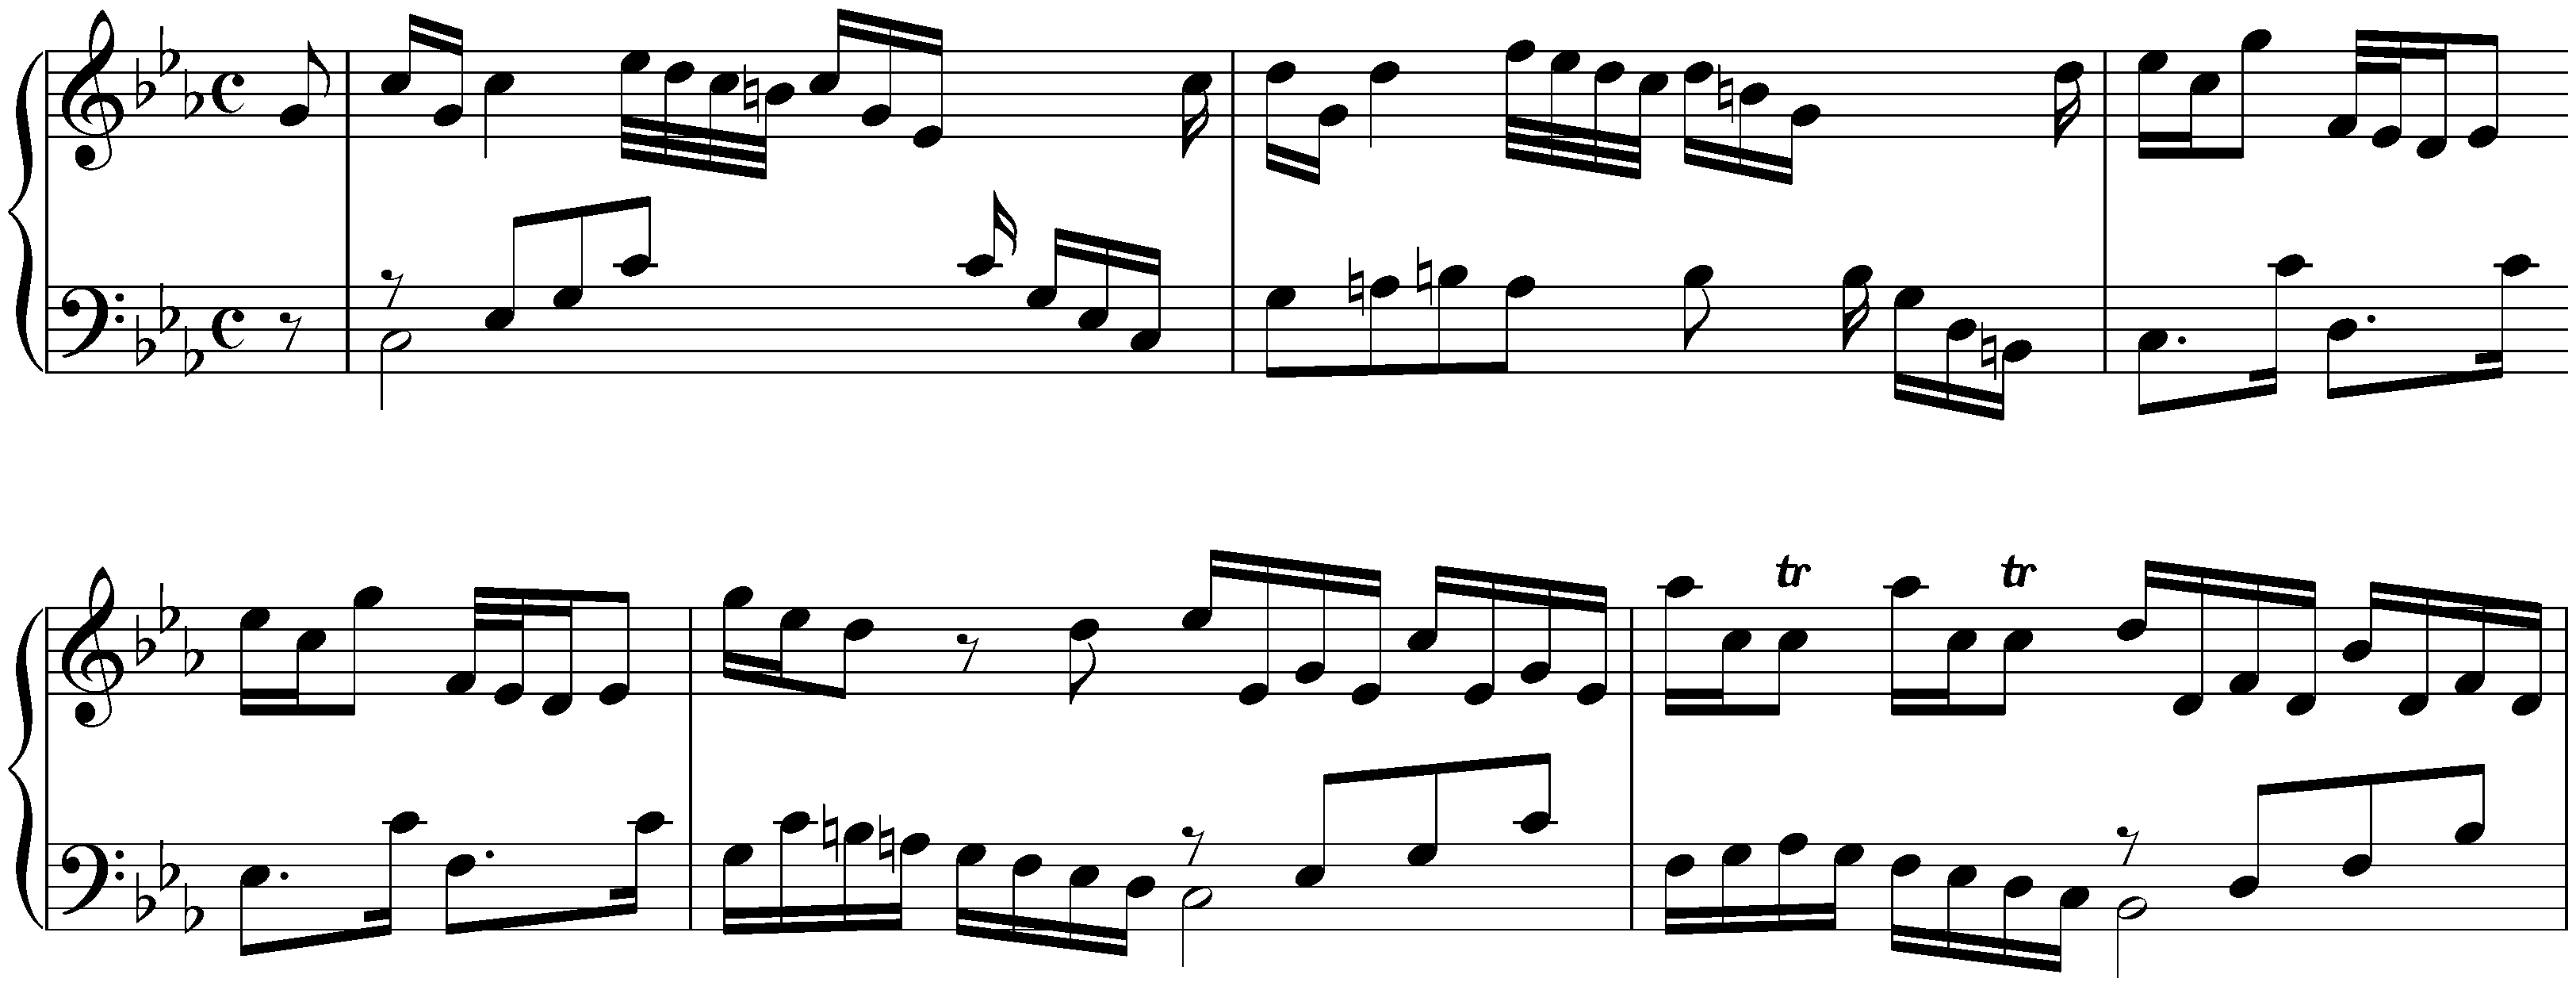 Fantasia in C minor, BWV Anh. 86